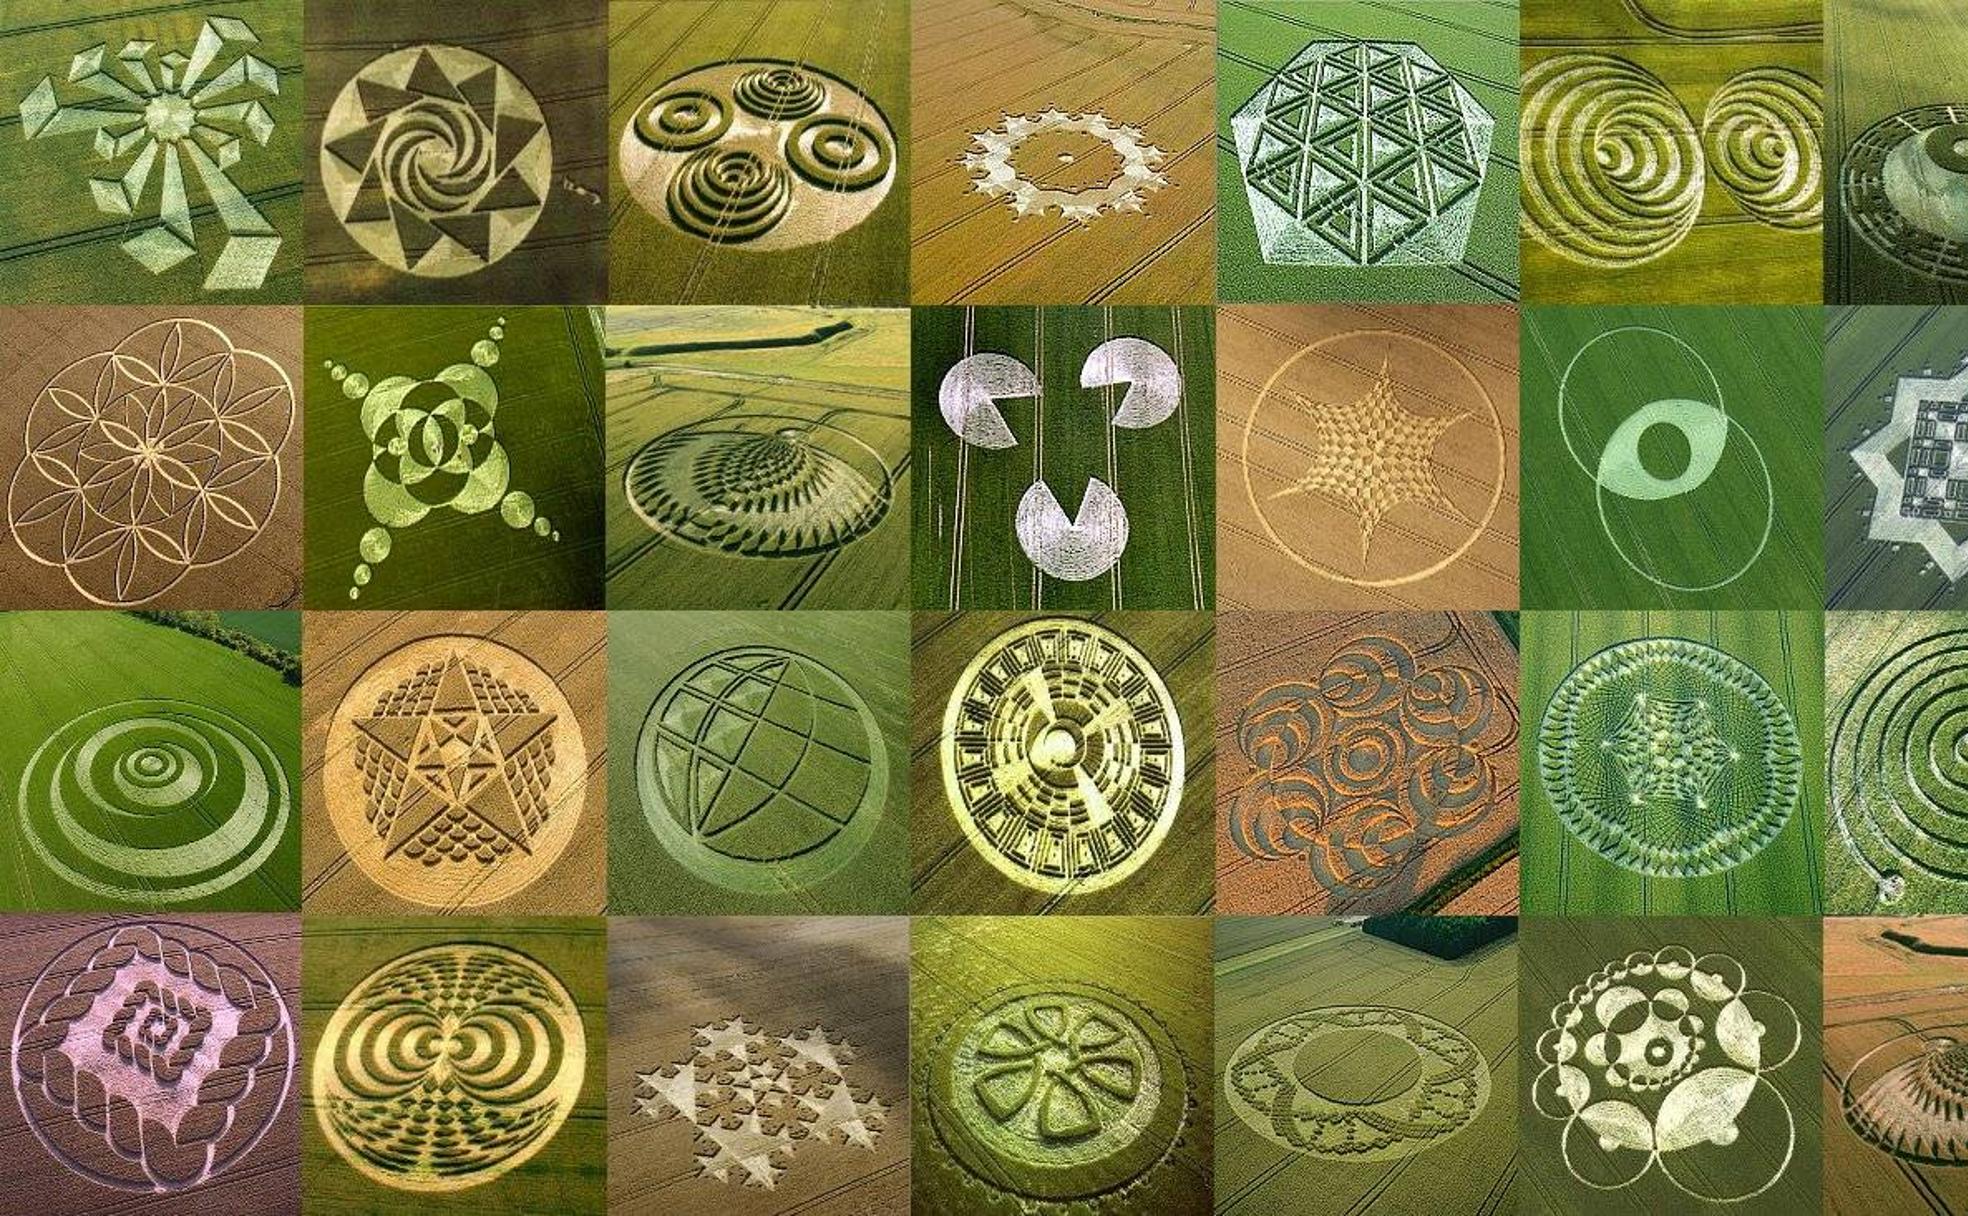 Los Enigmas De Los Crop Circles: Arte O Mensajes Extraterrestres